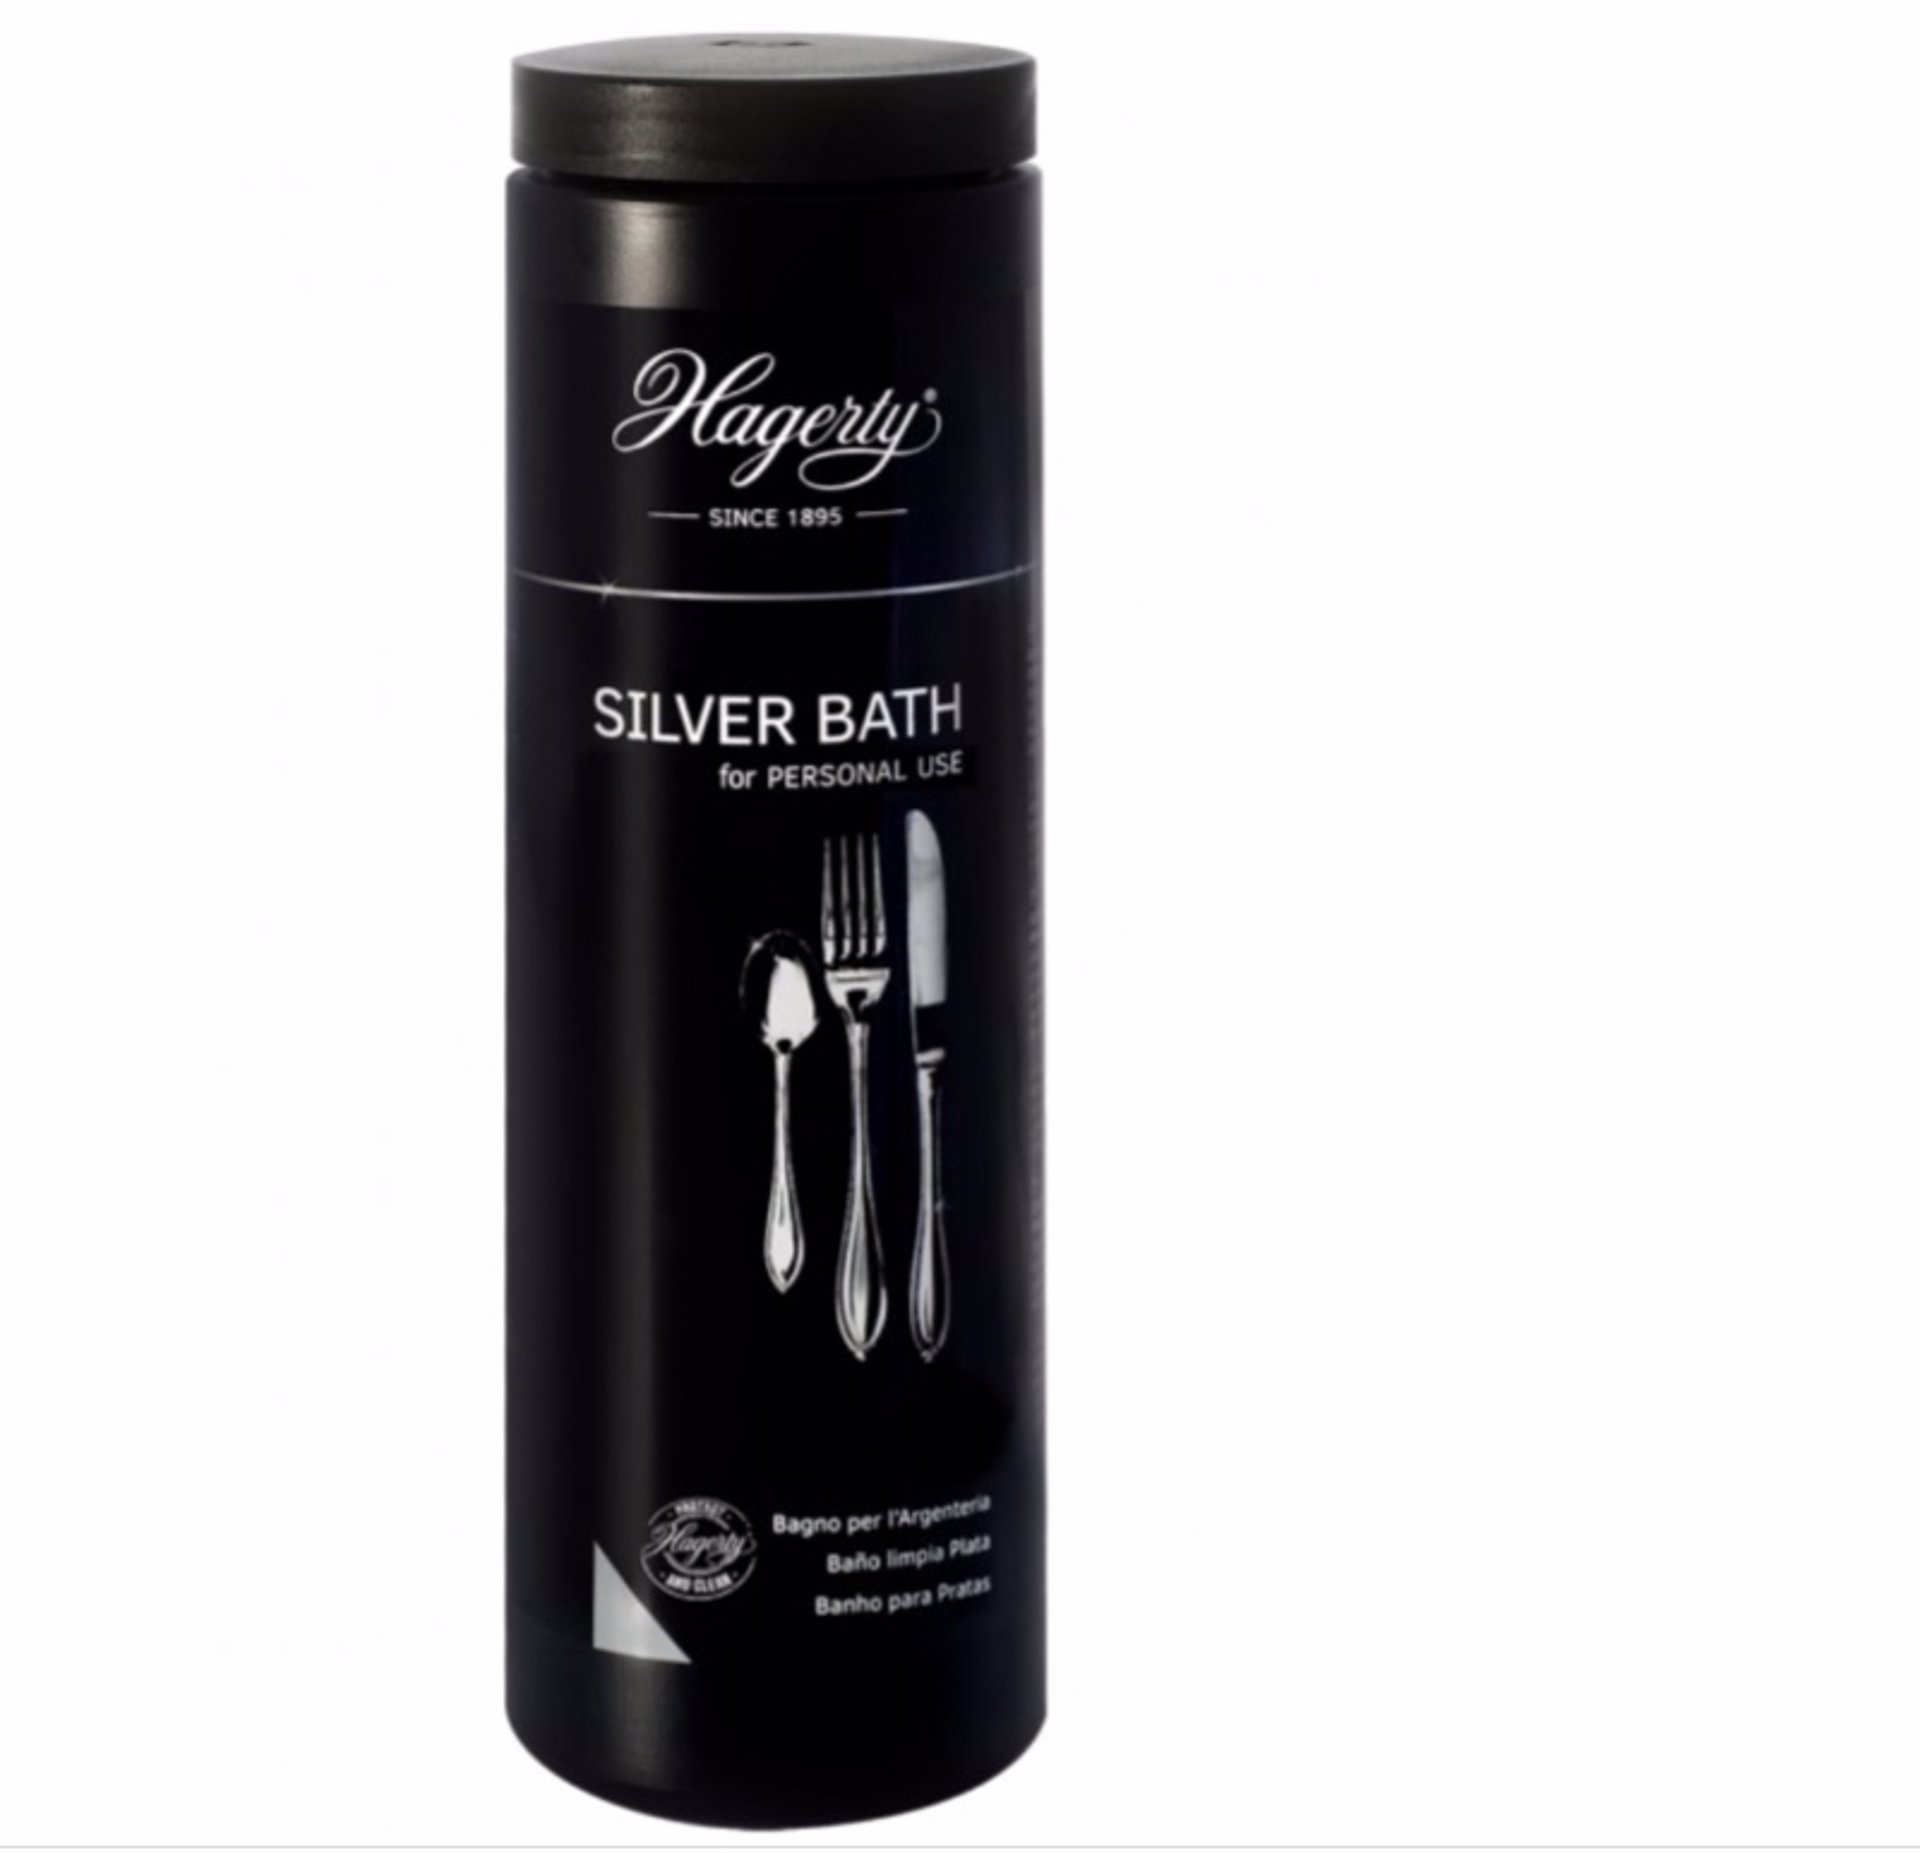 Silver Cloth : Gamuza impregnada para limpiar y pulir joyas plata